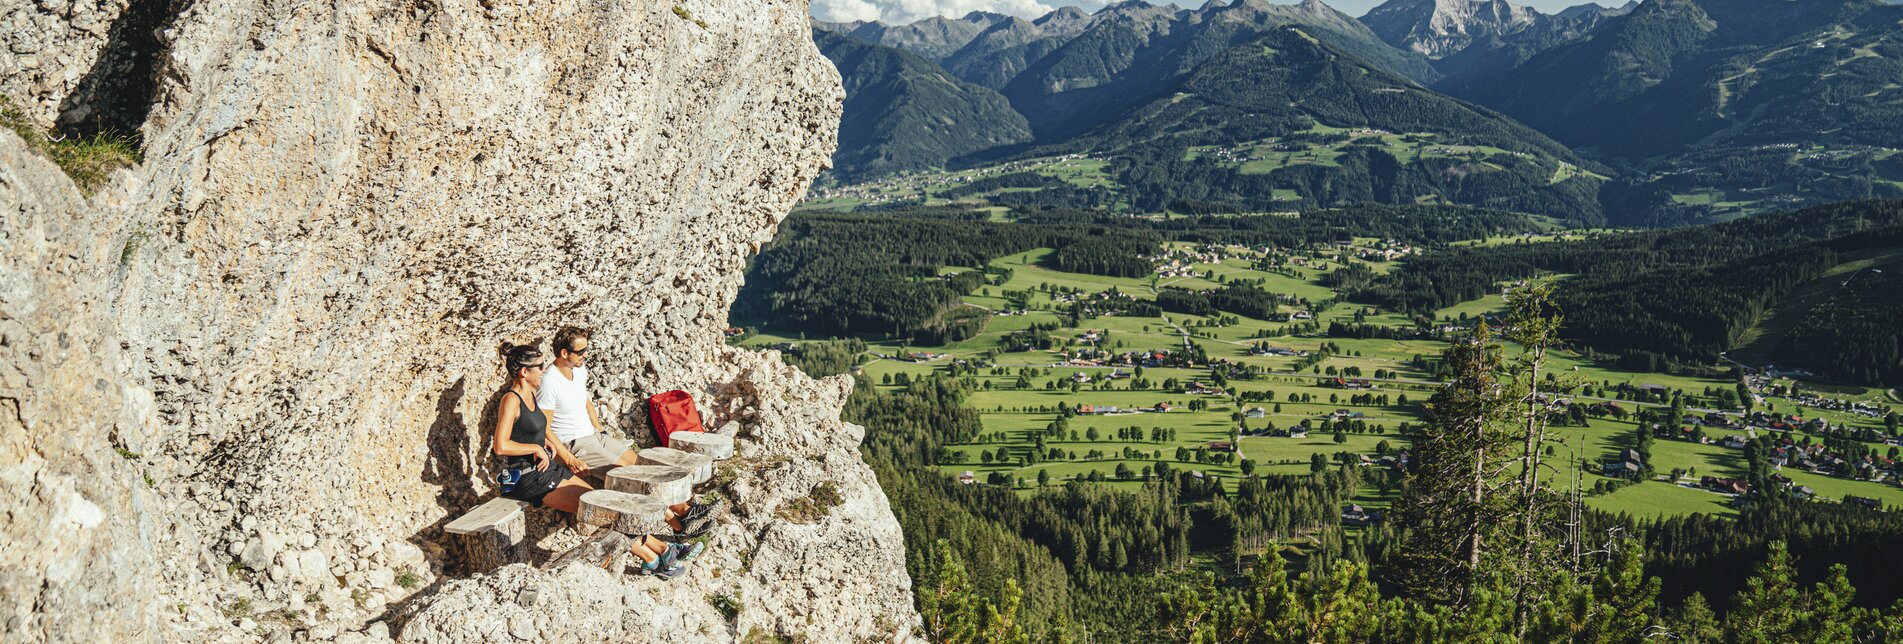 Logenplatz bei den "Steinernen Jungfrauen", einer bizarren Felsformation aus Konglomeratgestein, Ramsau am Dachstein | © Steiermark Tourismus | photo-austria.at